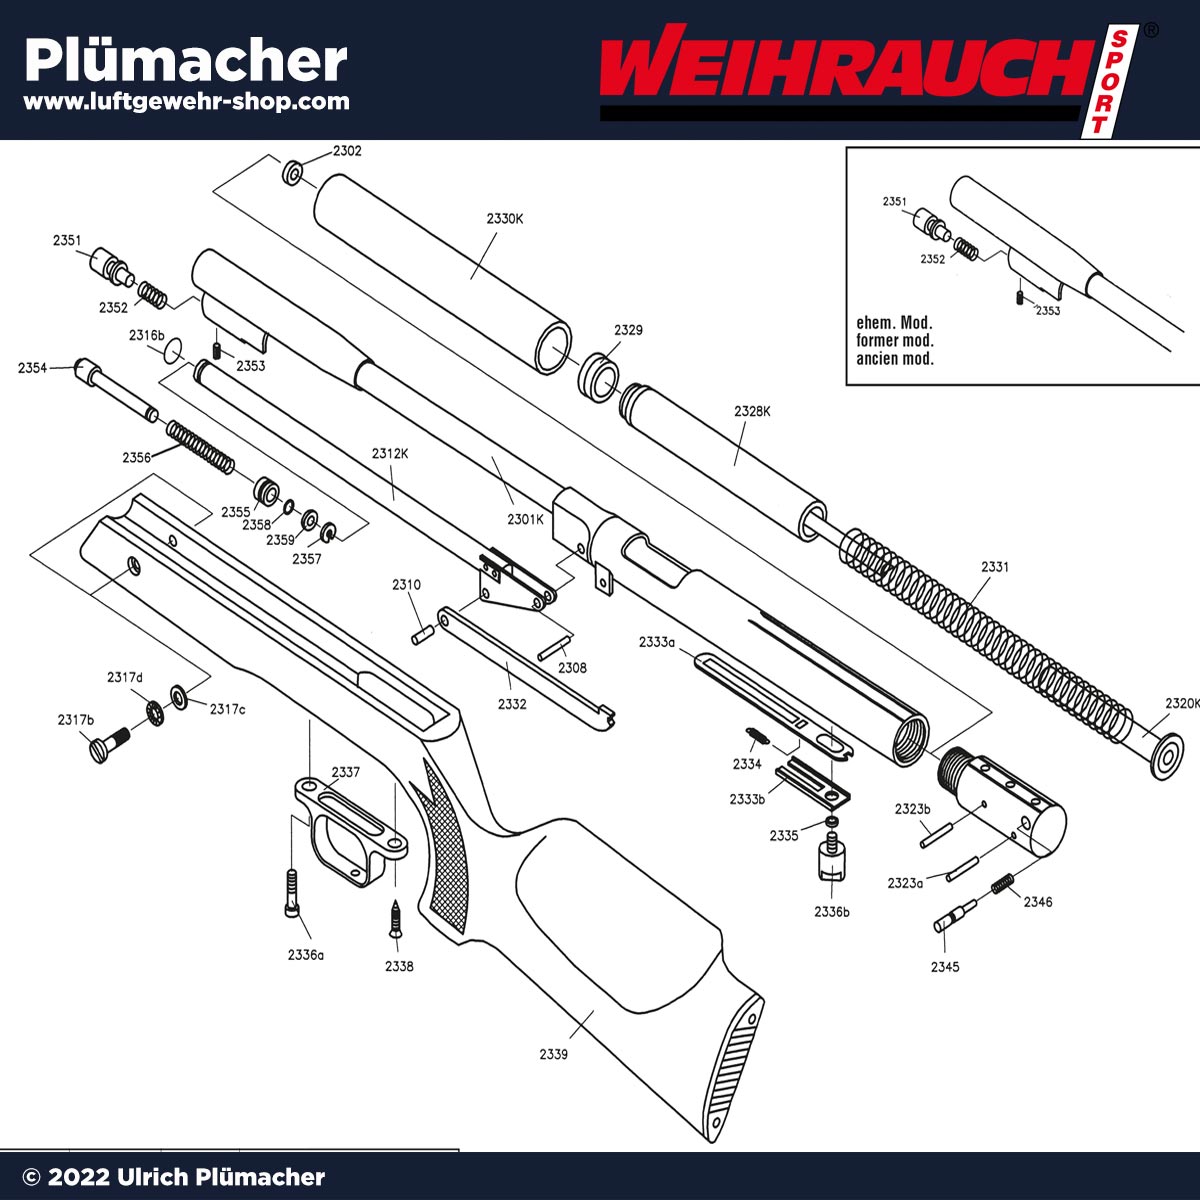 Weihrauch HW 97 K Ersatzteile und Explosionszeichnung für das Luftgewehr